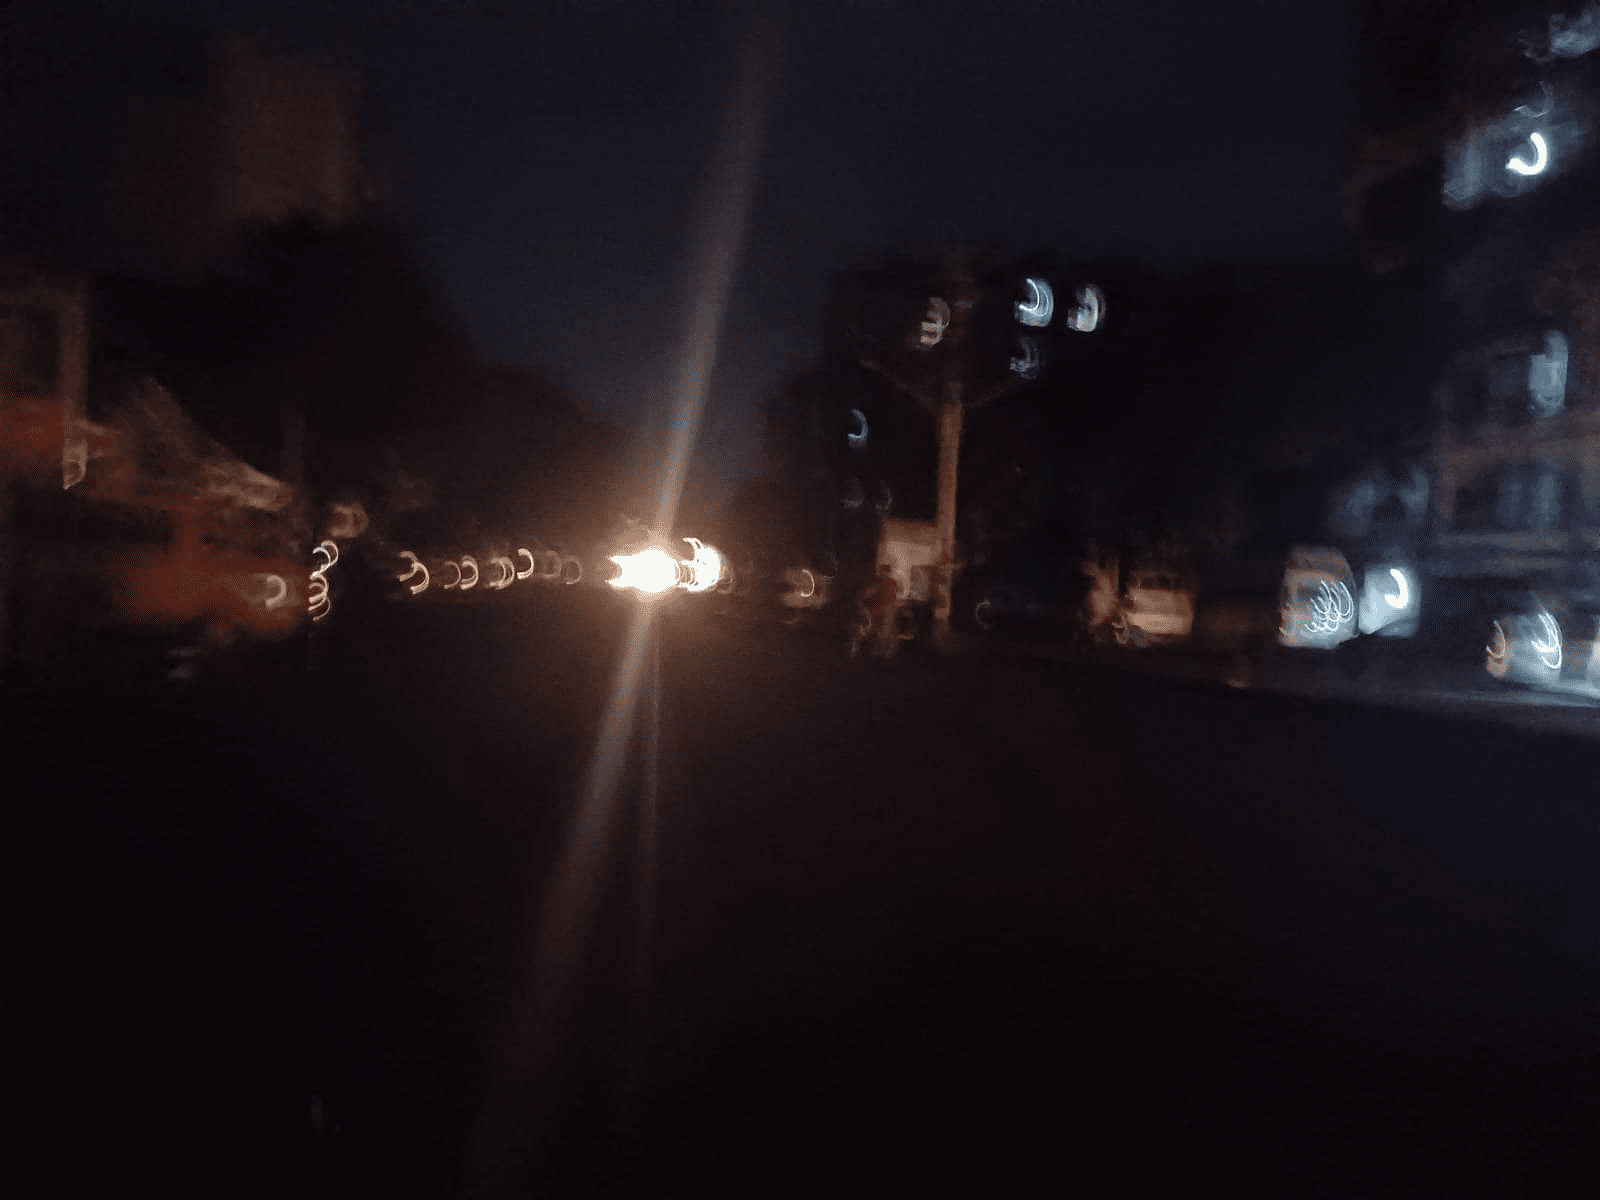 ကျောက်မြောင်း သီတာလမ်းမှာ လူငယ်သုံးဦးကိုပစ်ခတ်ဖမ်းဆီး